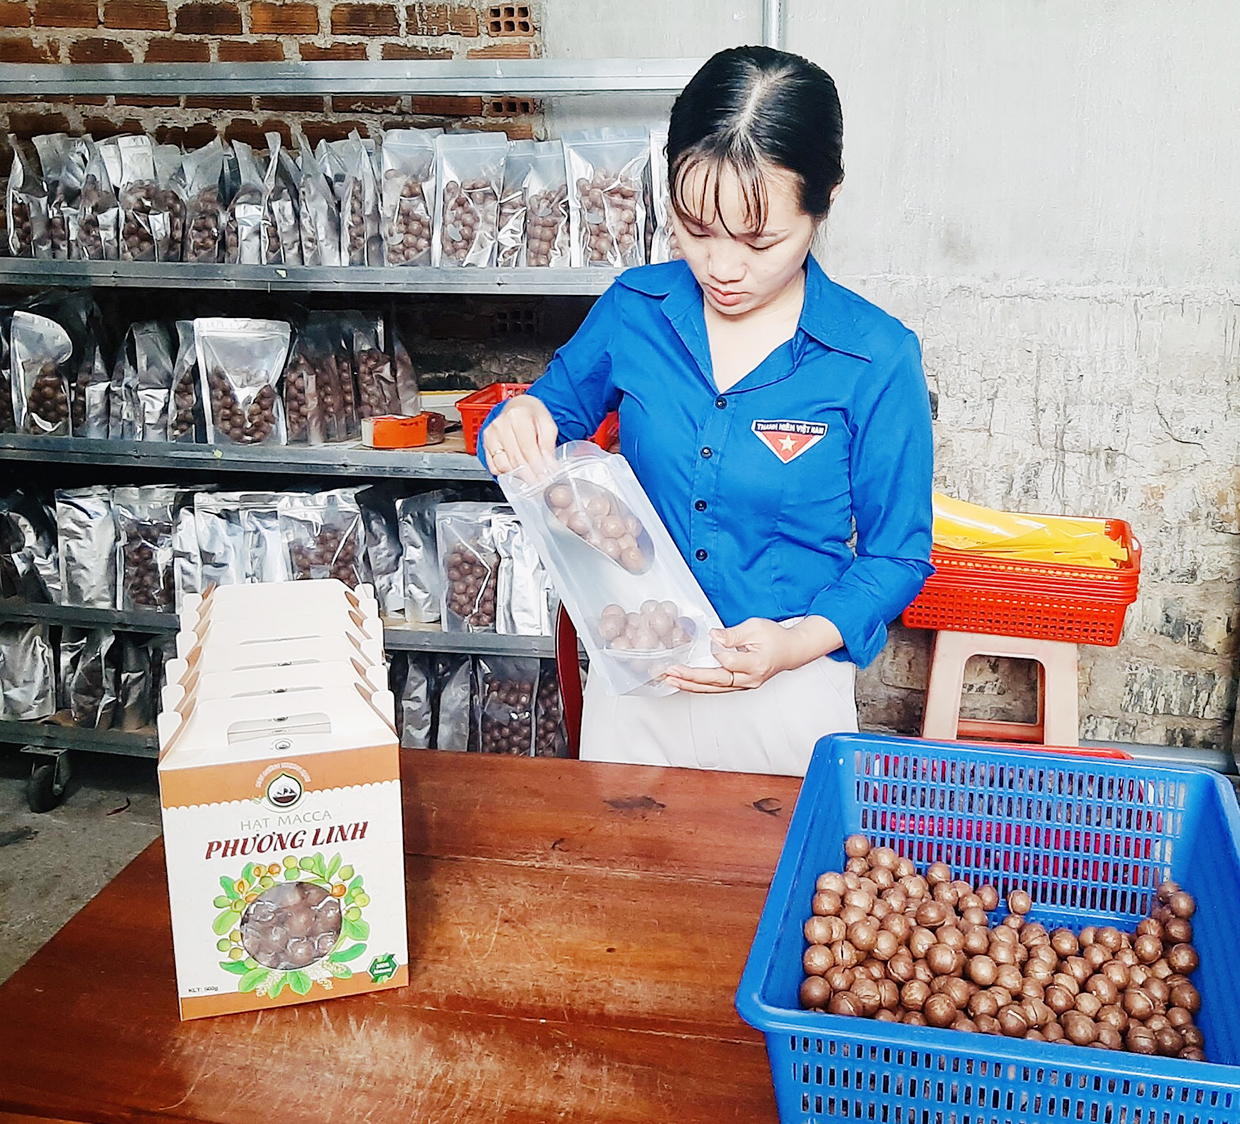  Chị Đỗ Thị Thu Hằng (chuyên viên Huyện Đoàn Kbang) đang đóng gói sản phẩm macca sấy nứt hạt. Ảnh: Phan Lài